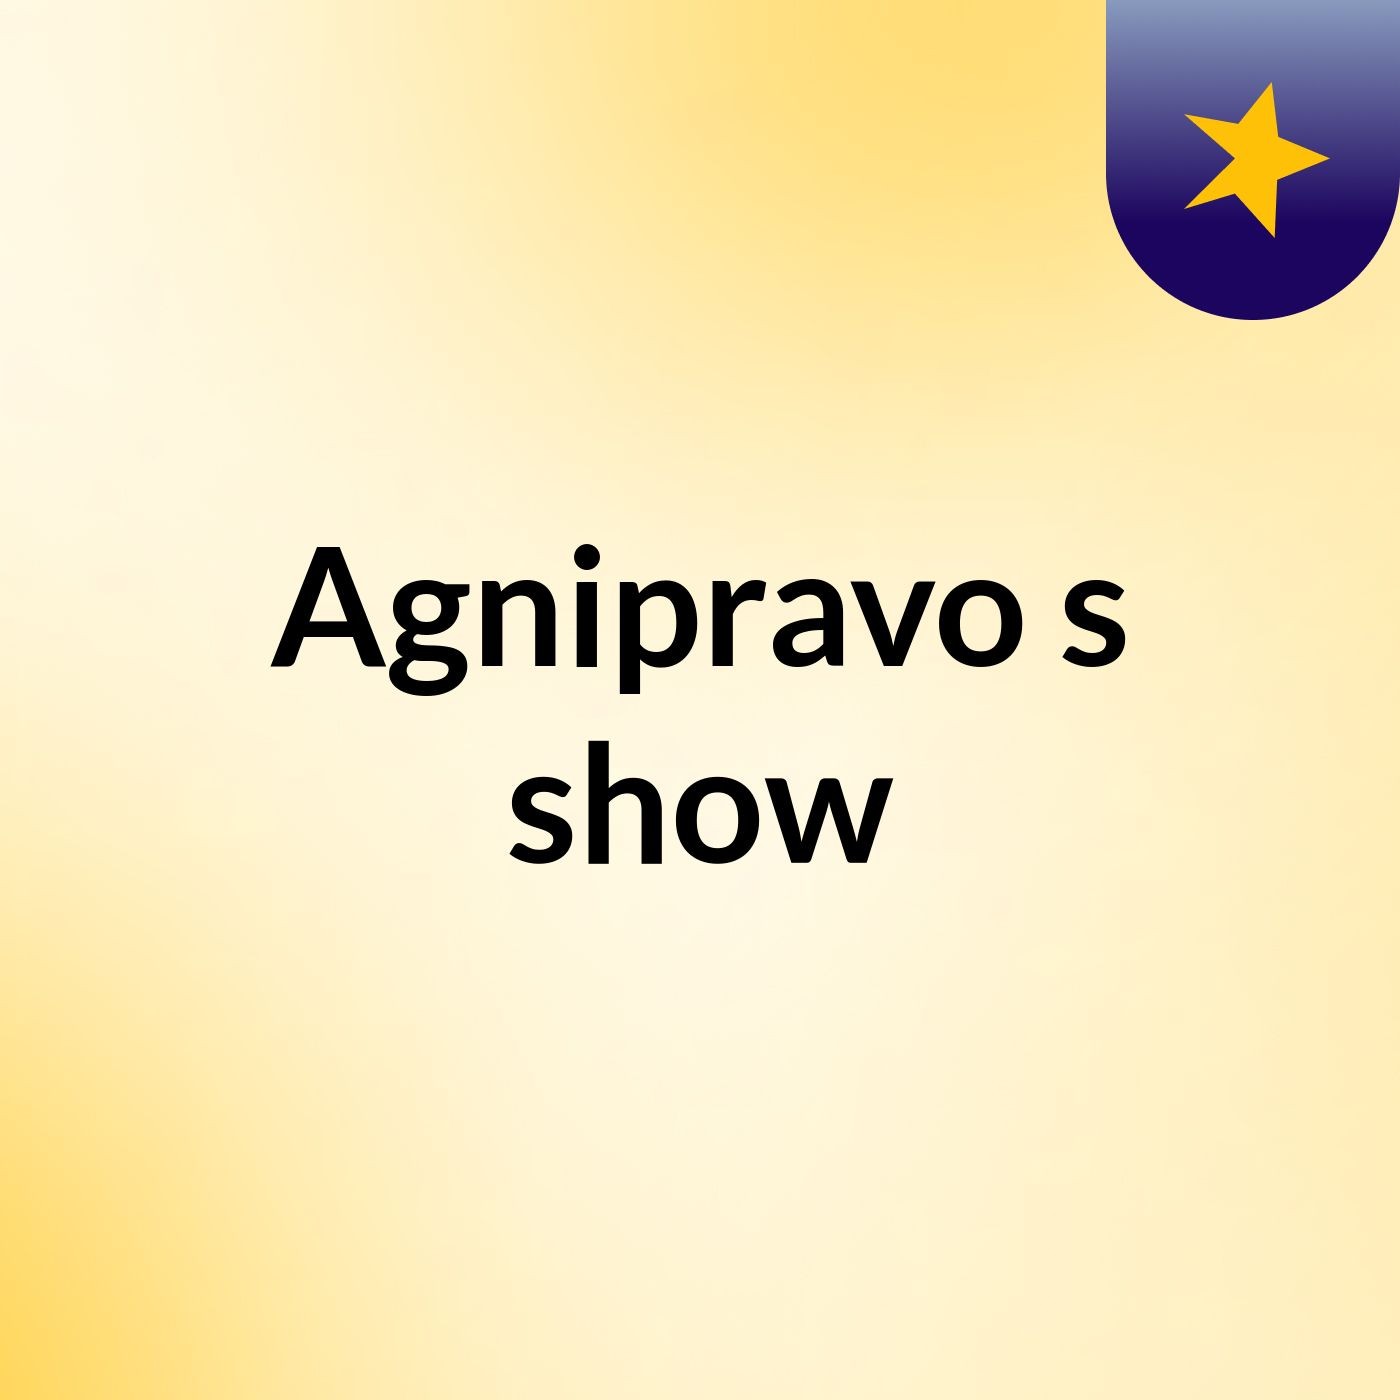 Agnipravo's show